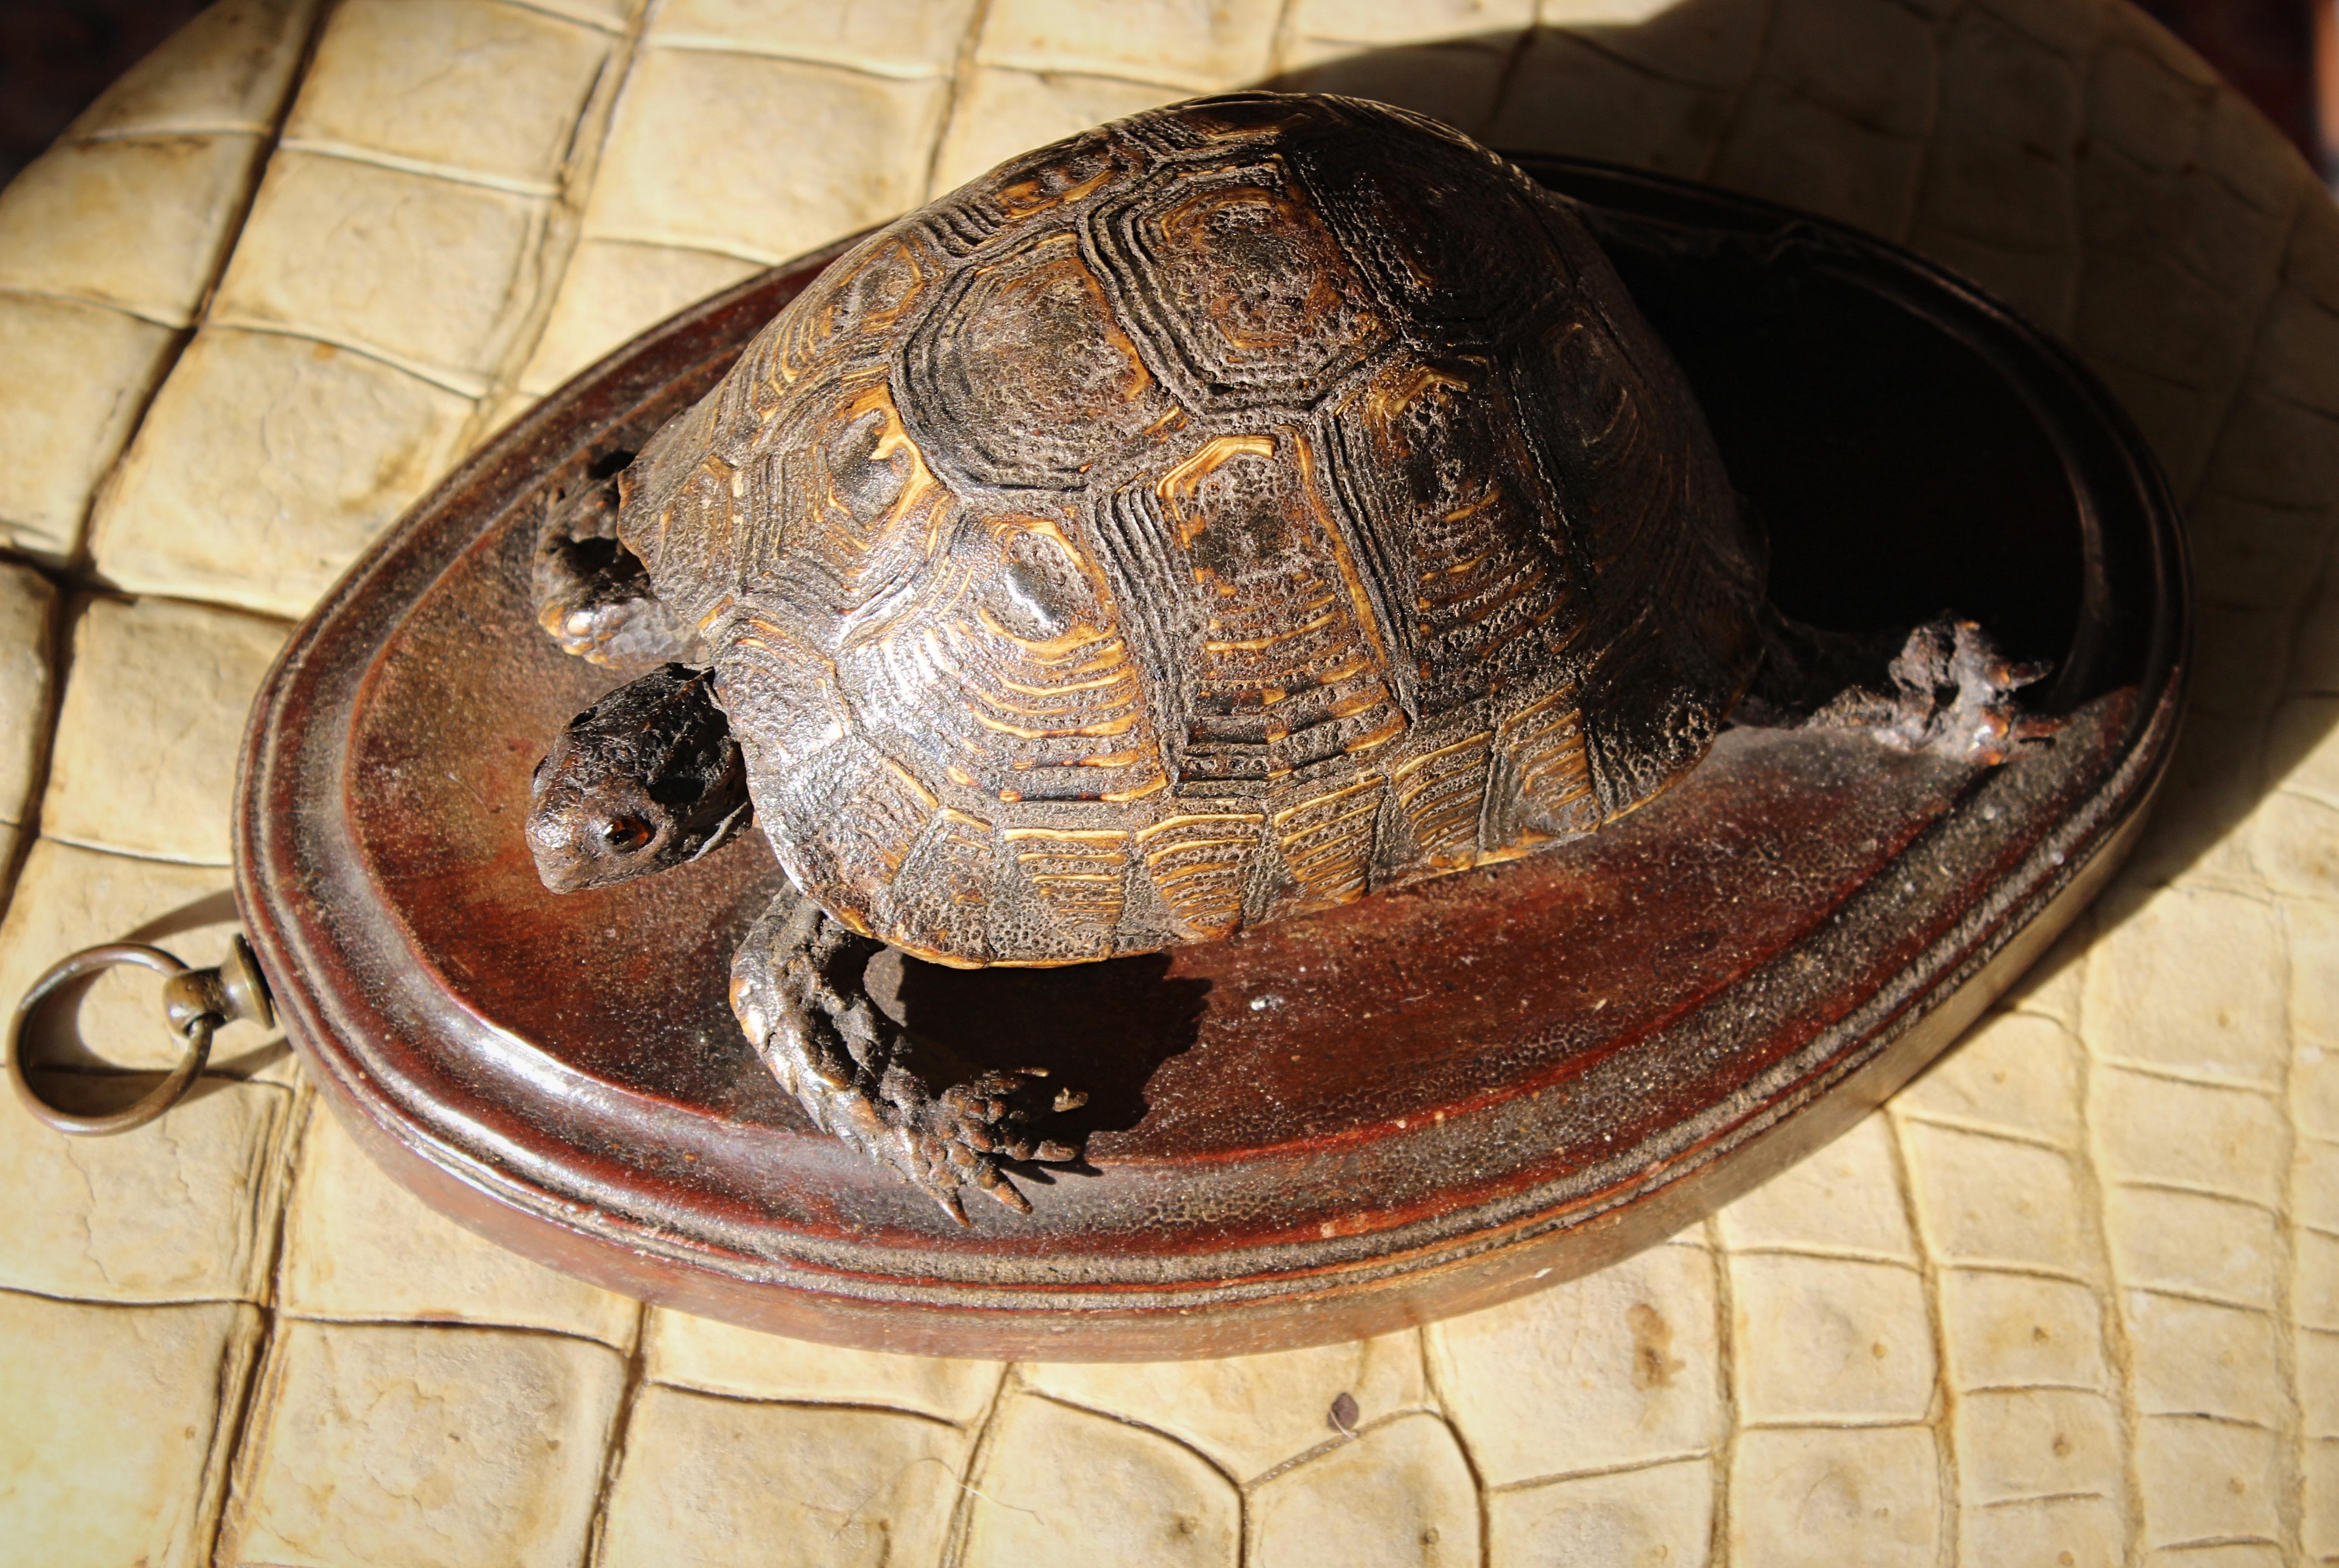 Eine wunderbare und völlig original frühe viktorianische Schildkröte, montiert auf einem dicken ovalen Eichenbrett mit dekorativem, abgeschrägtem Rand und Messingaufhängebügel.

24cm Länge 
16,5 cm Breite 
9,5 cm in der Tiefe 

um 1840, englischer